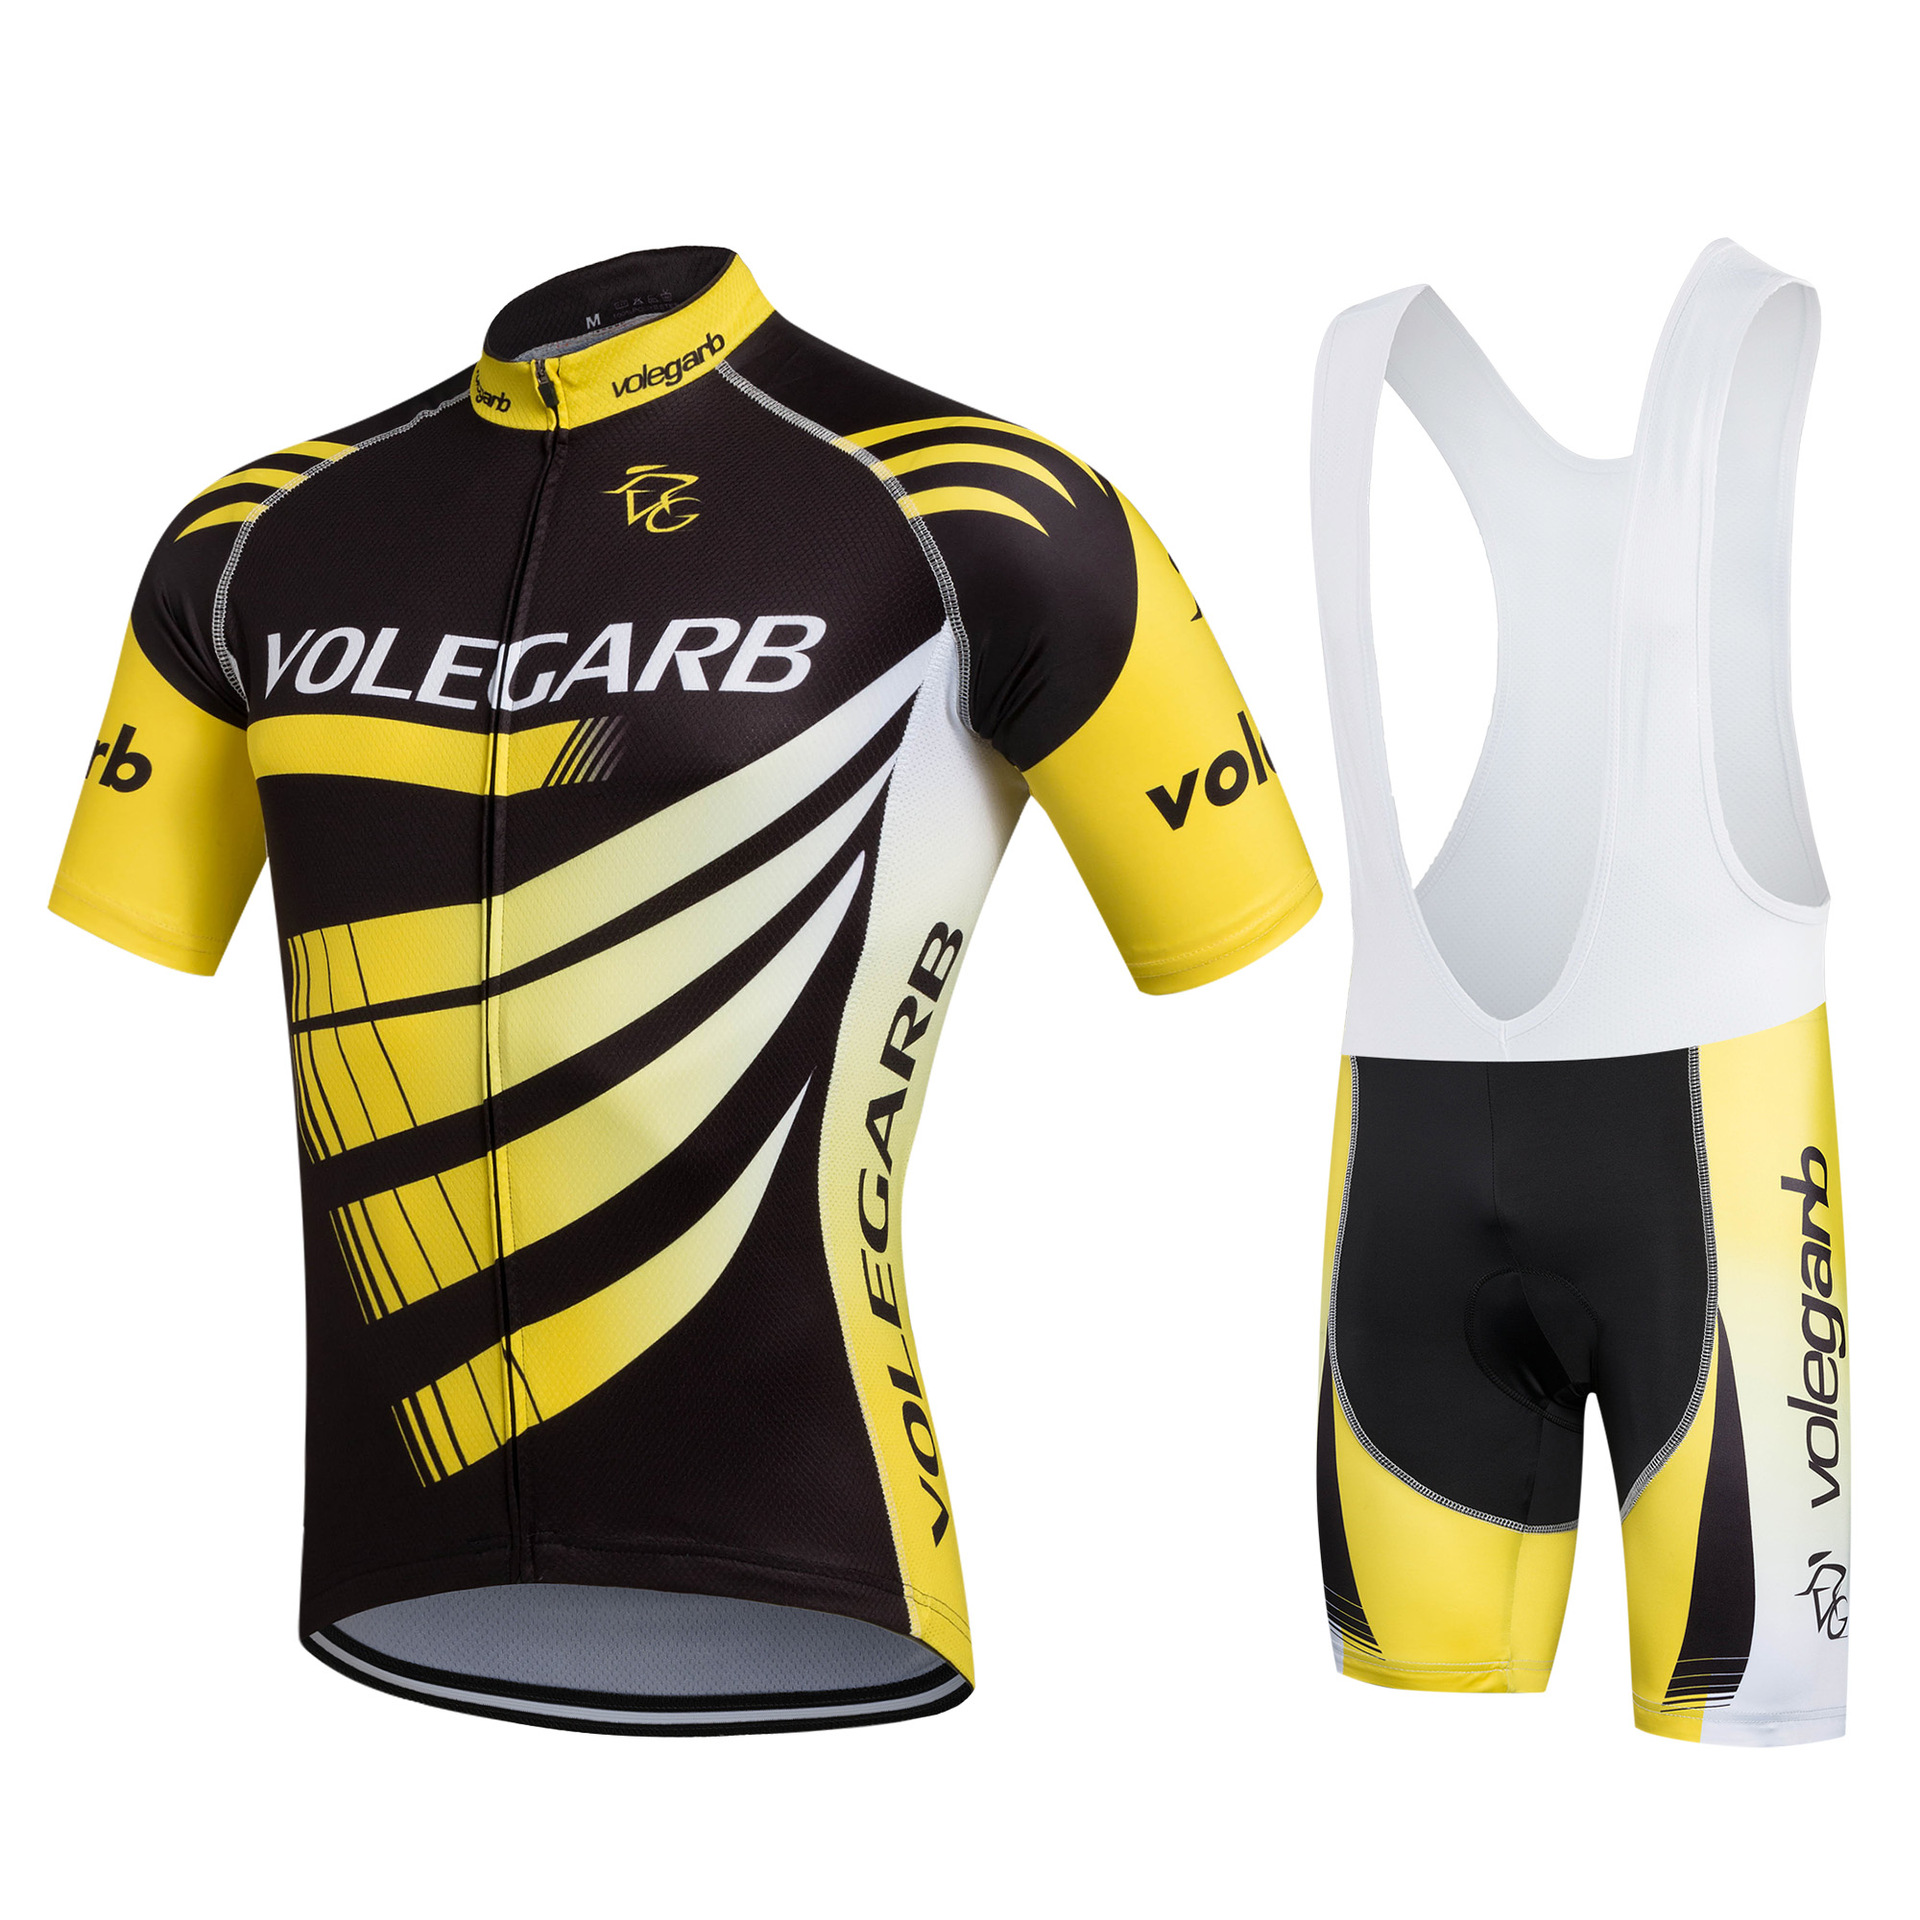 自主品牌volegarb骑行服装吸汗透气短袖骑行背带服套装